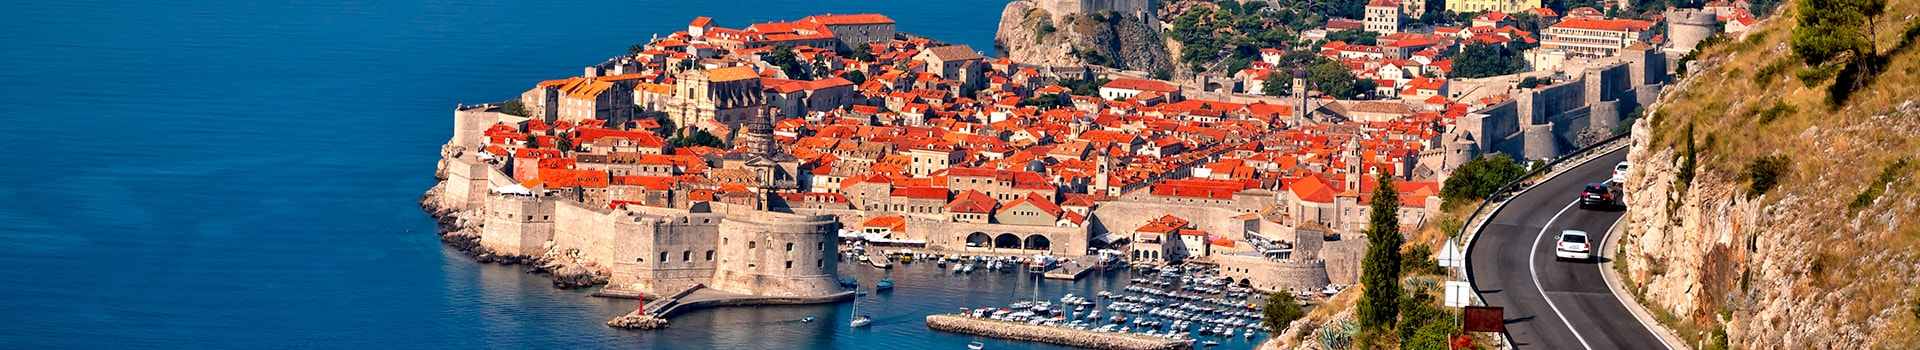 Ténérife - Dubrovnik